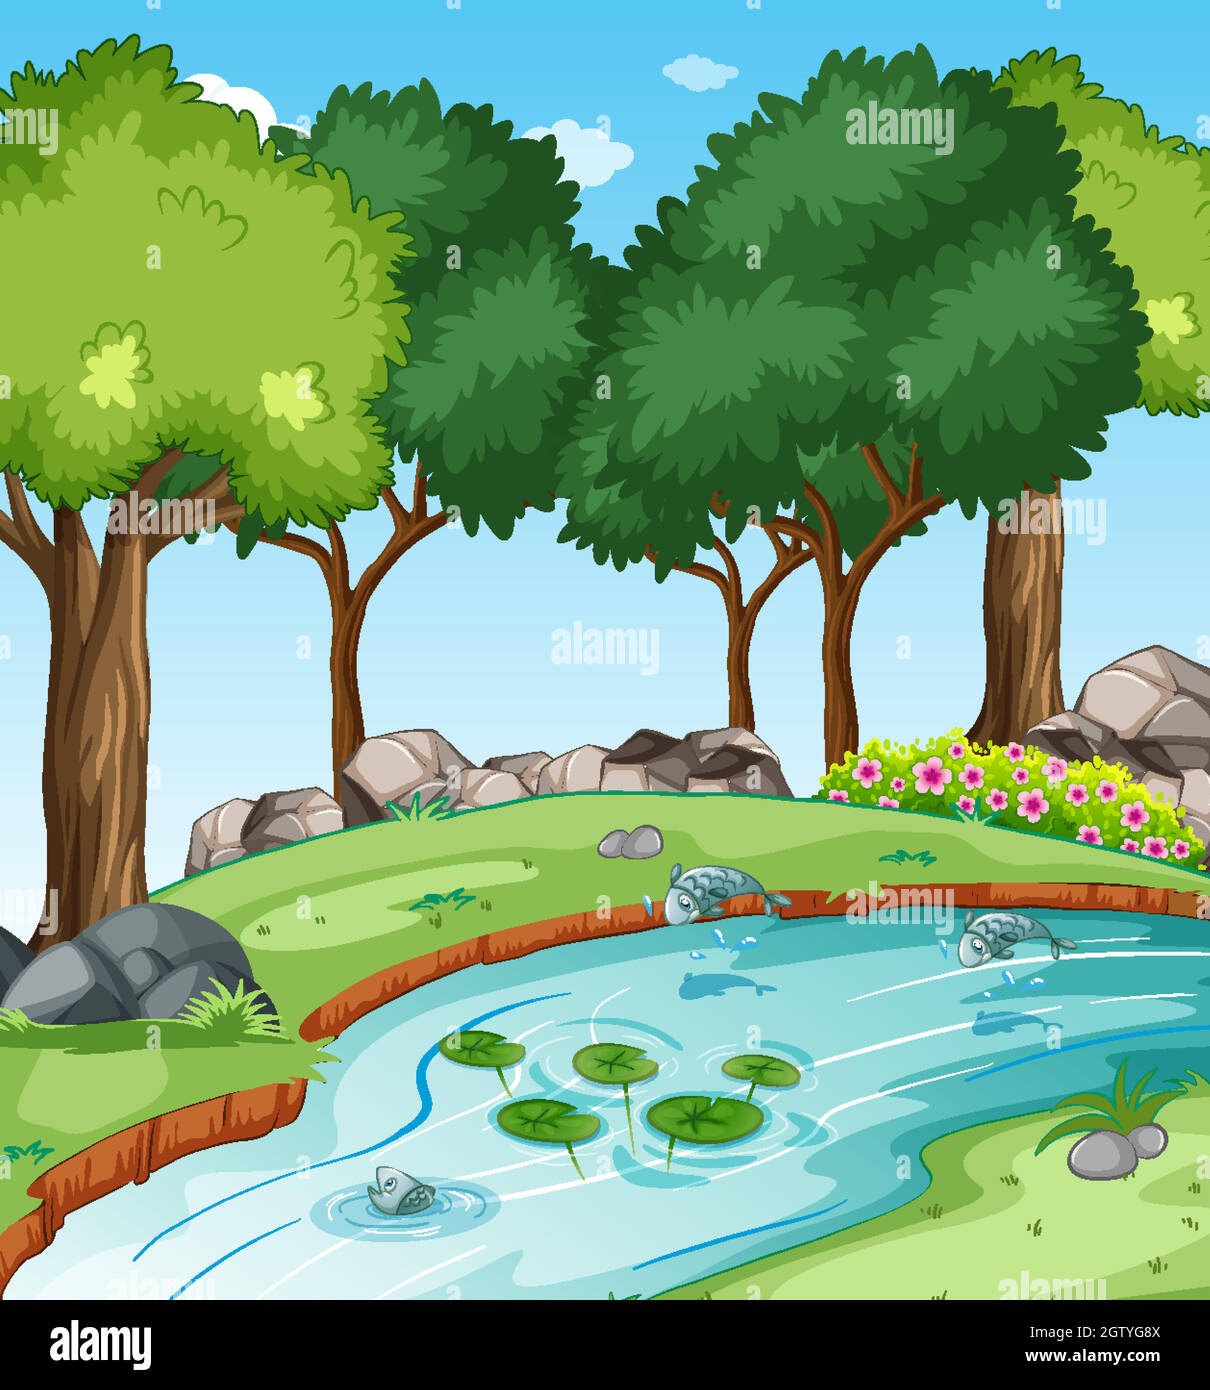 Ruisseau dans la scène de la forêt avec quelques poissons Illustration de Vecteur